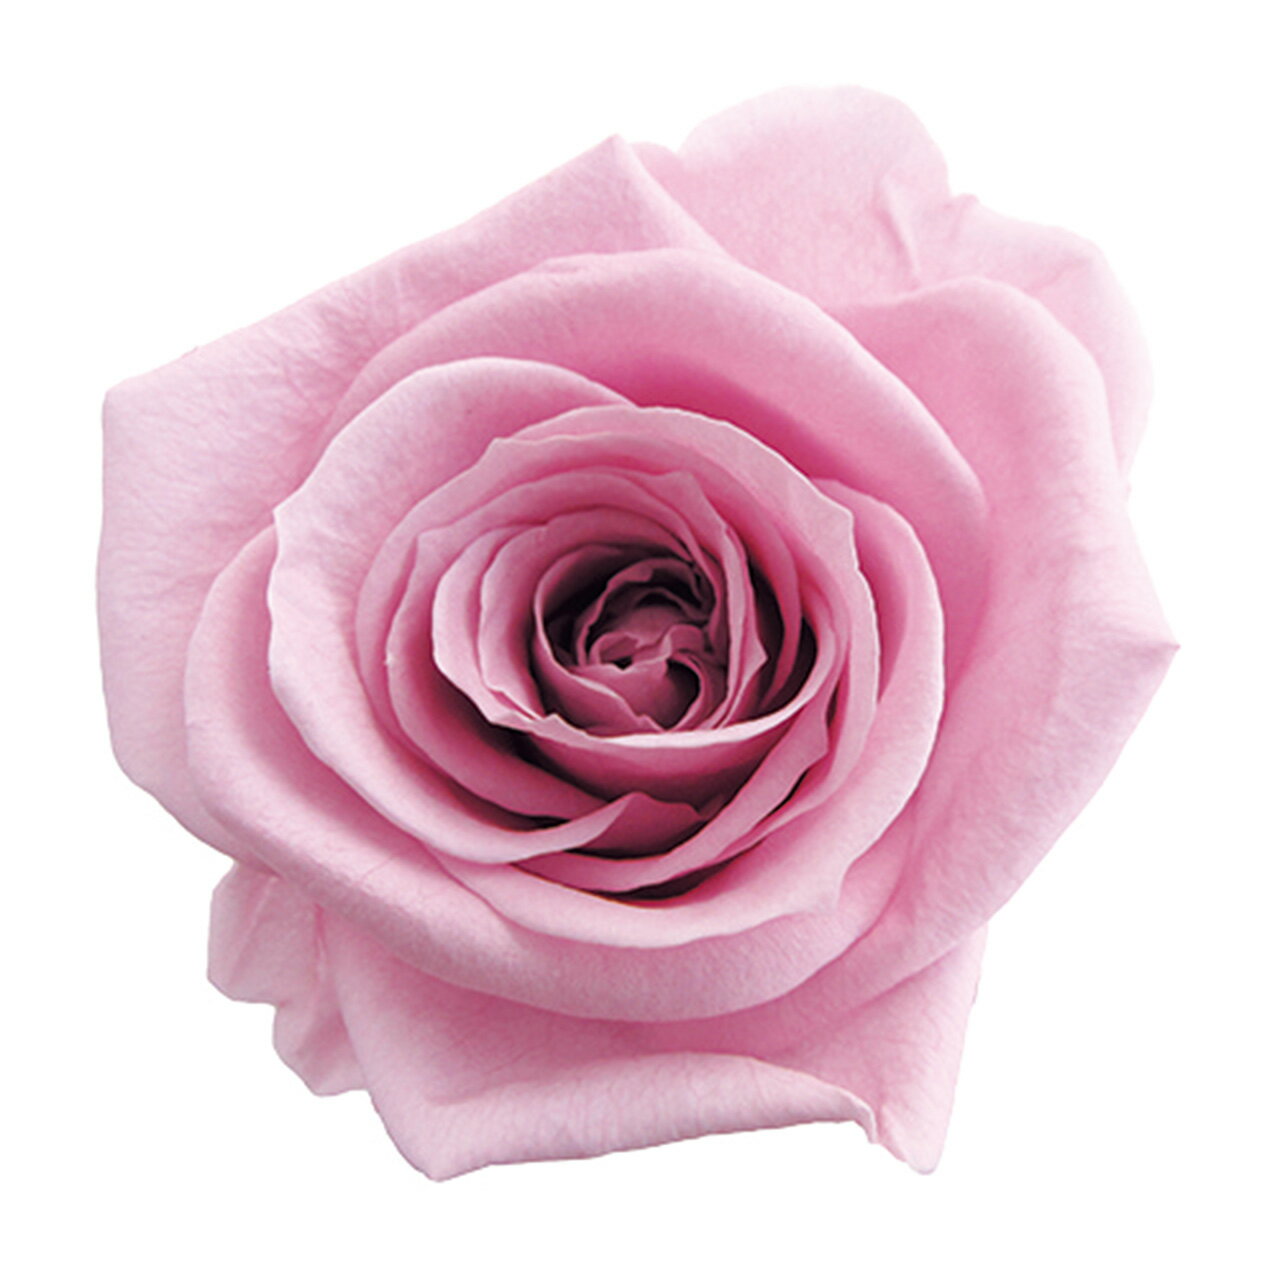 メディアナローズ ラベンダーピンク プリザーブドフラワー  8輪入 バラ 薔薇 アレンジメント花材 天然素材 ハンドメイド資材 コロンビア産 フラワーアレンジメント 送料無料